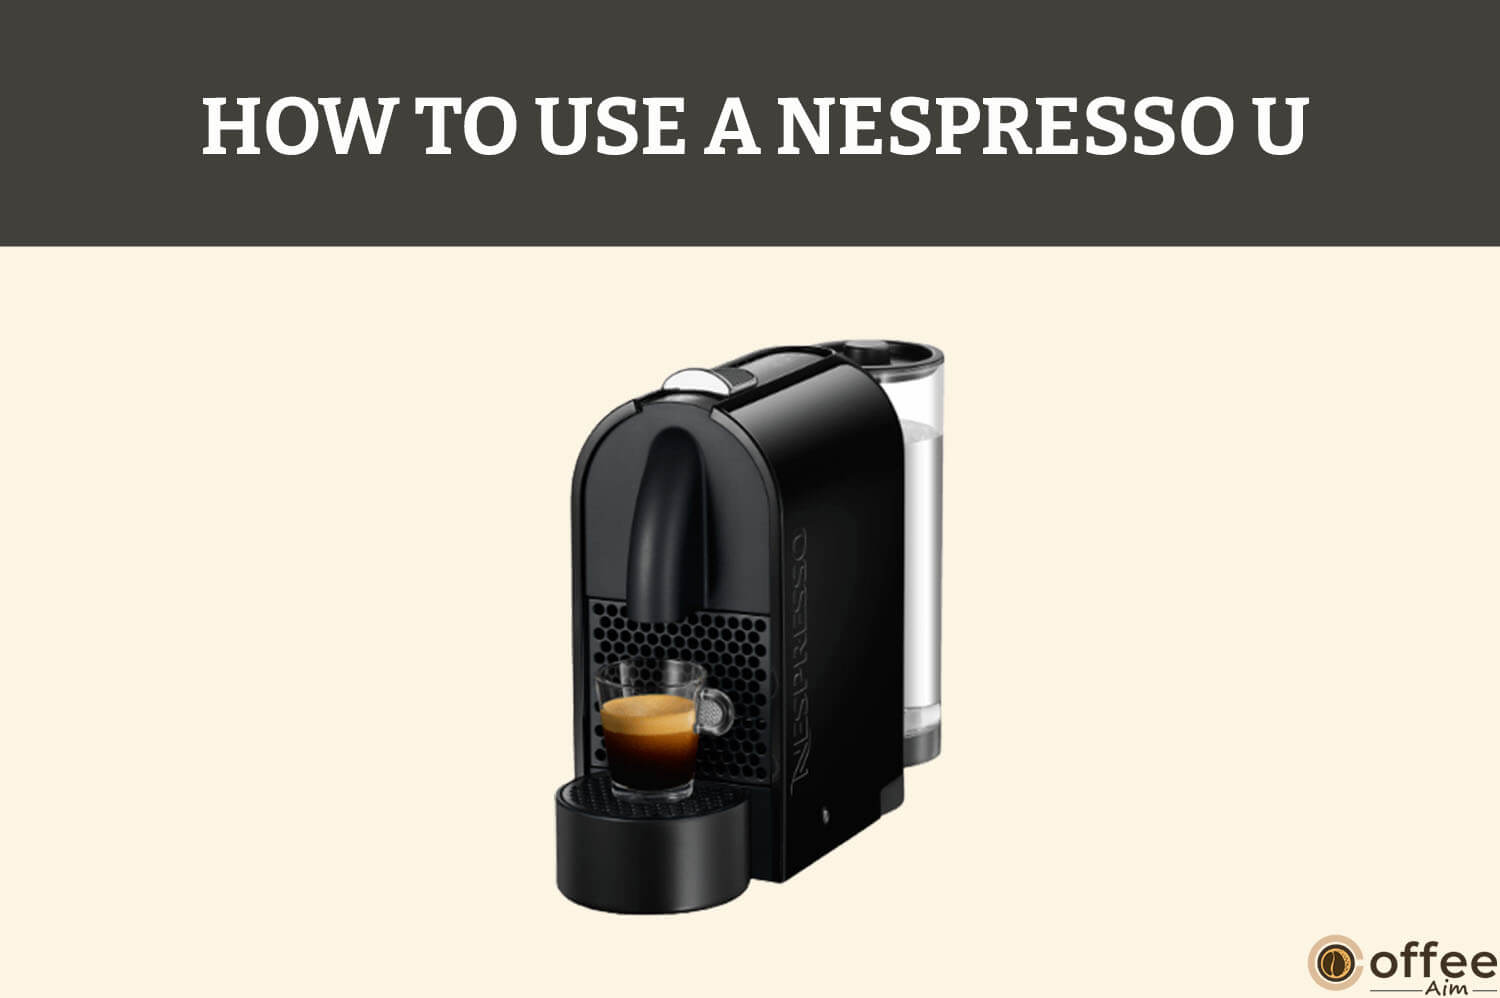 Use A Nespresso U